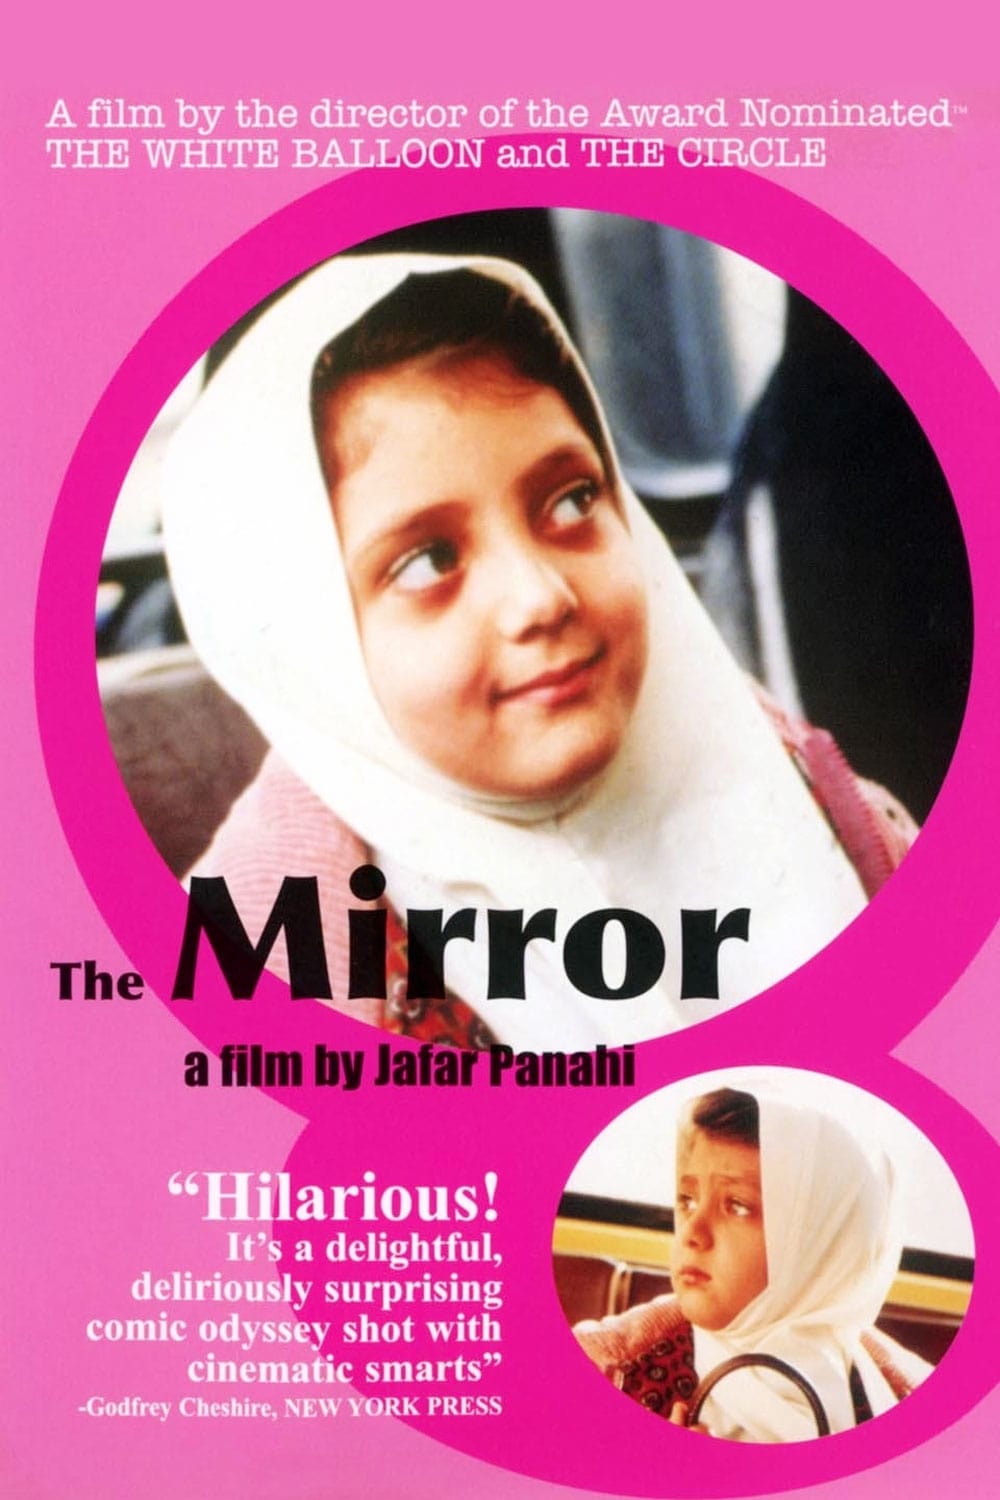 Le Miroir